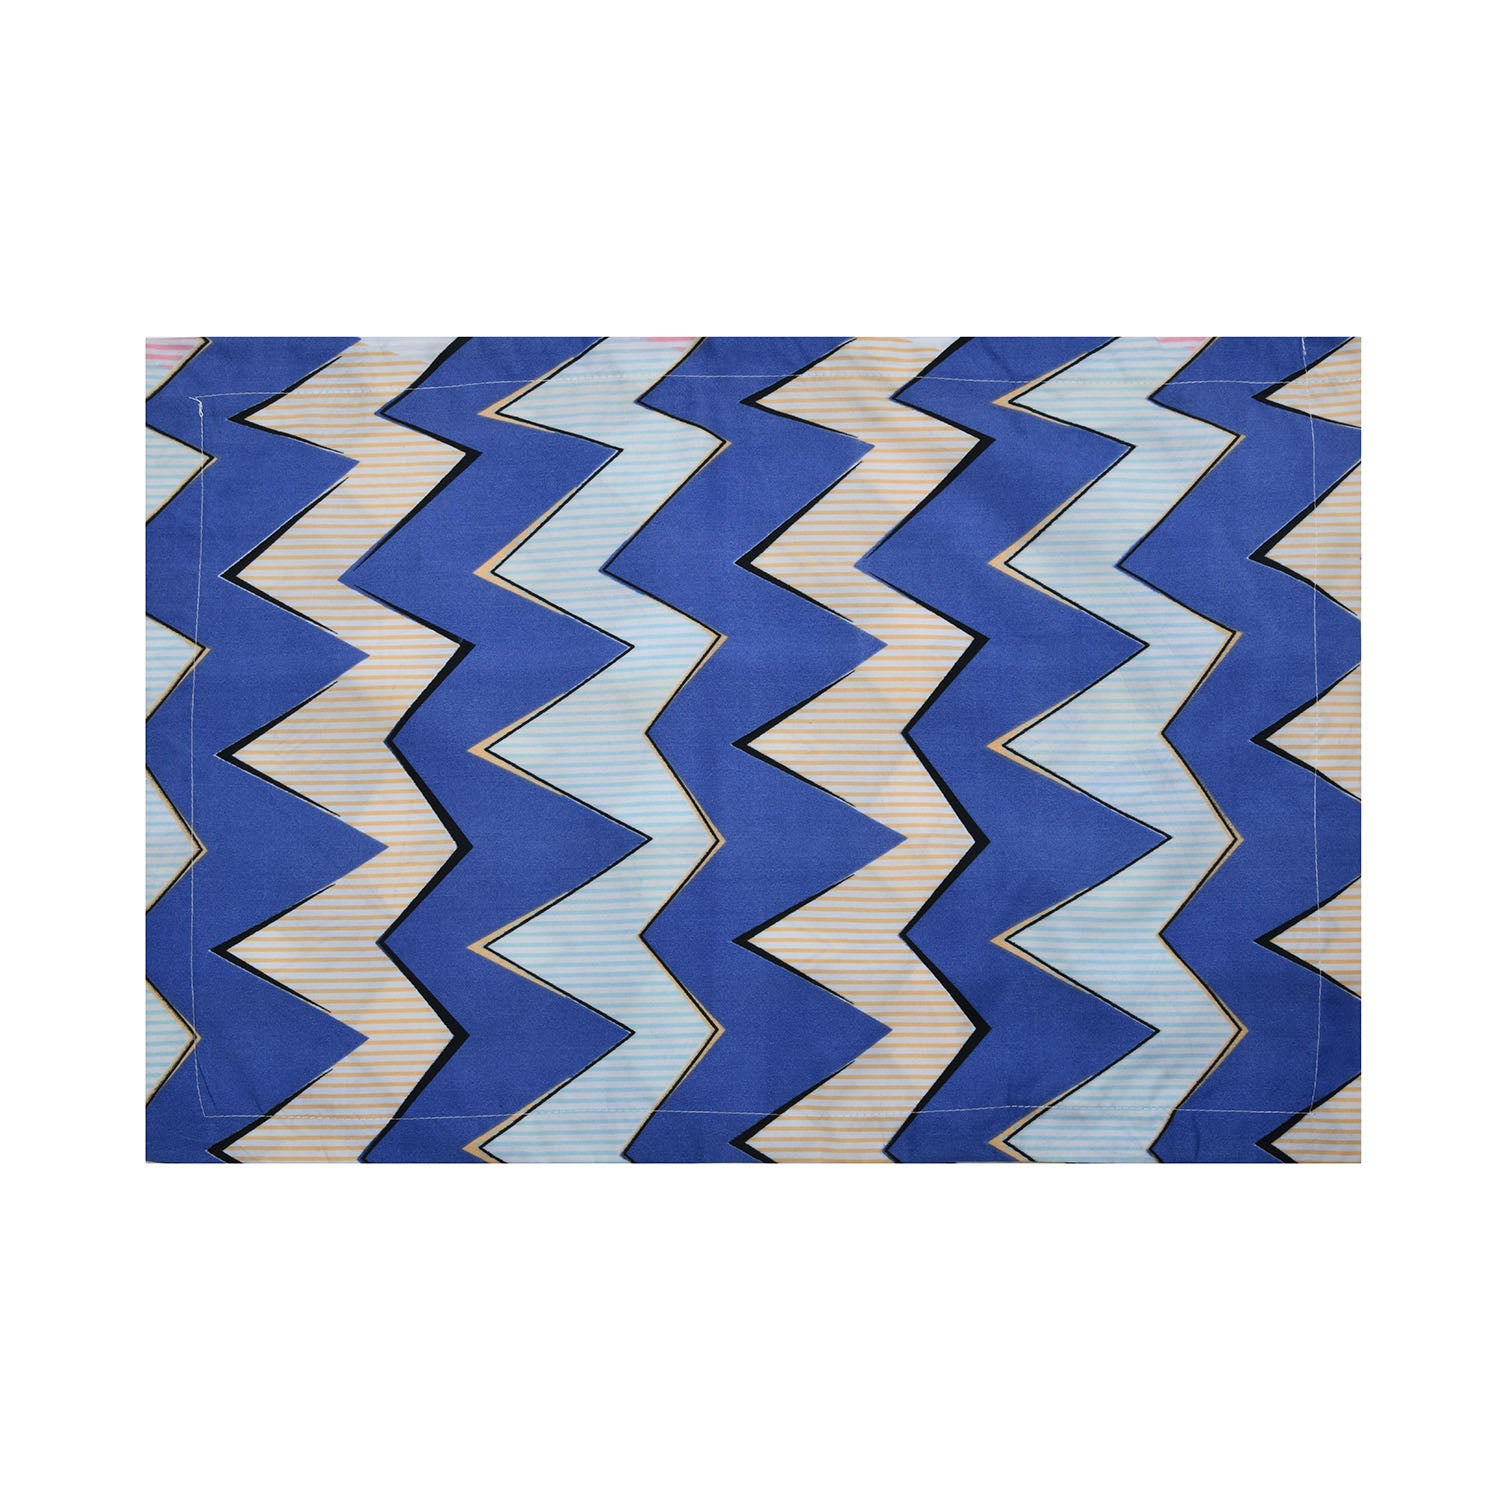 Ammara Zigzag Print 46 x 69 cm Pillow Covers Set of 2 (Multicolor)